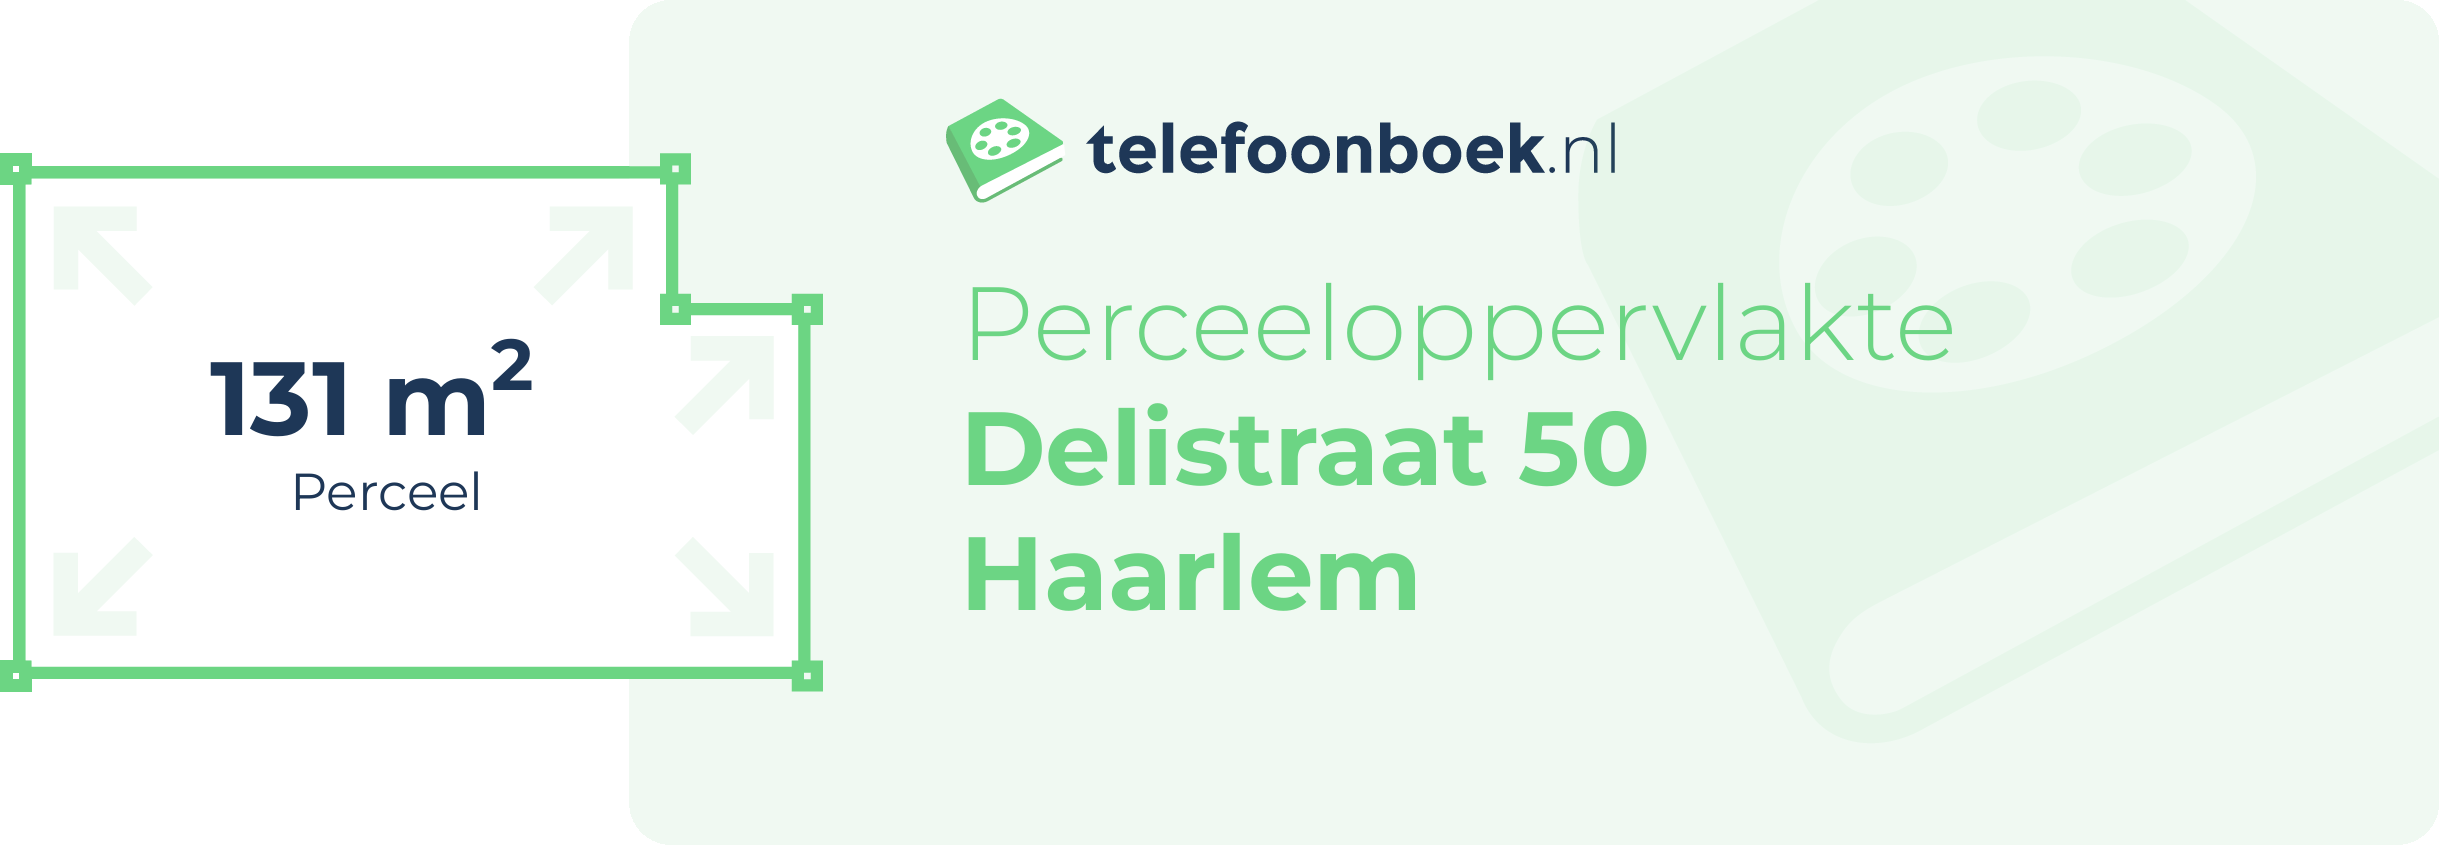 Perceeloppervlakte Delistraat 50 Haarlem